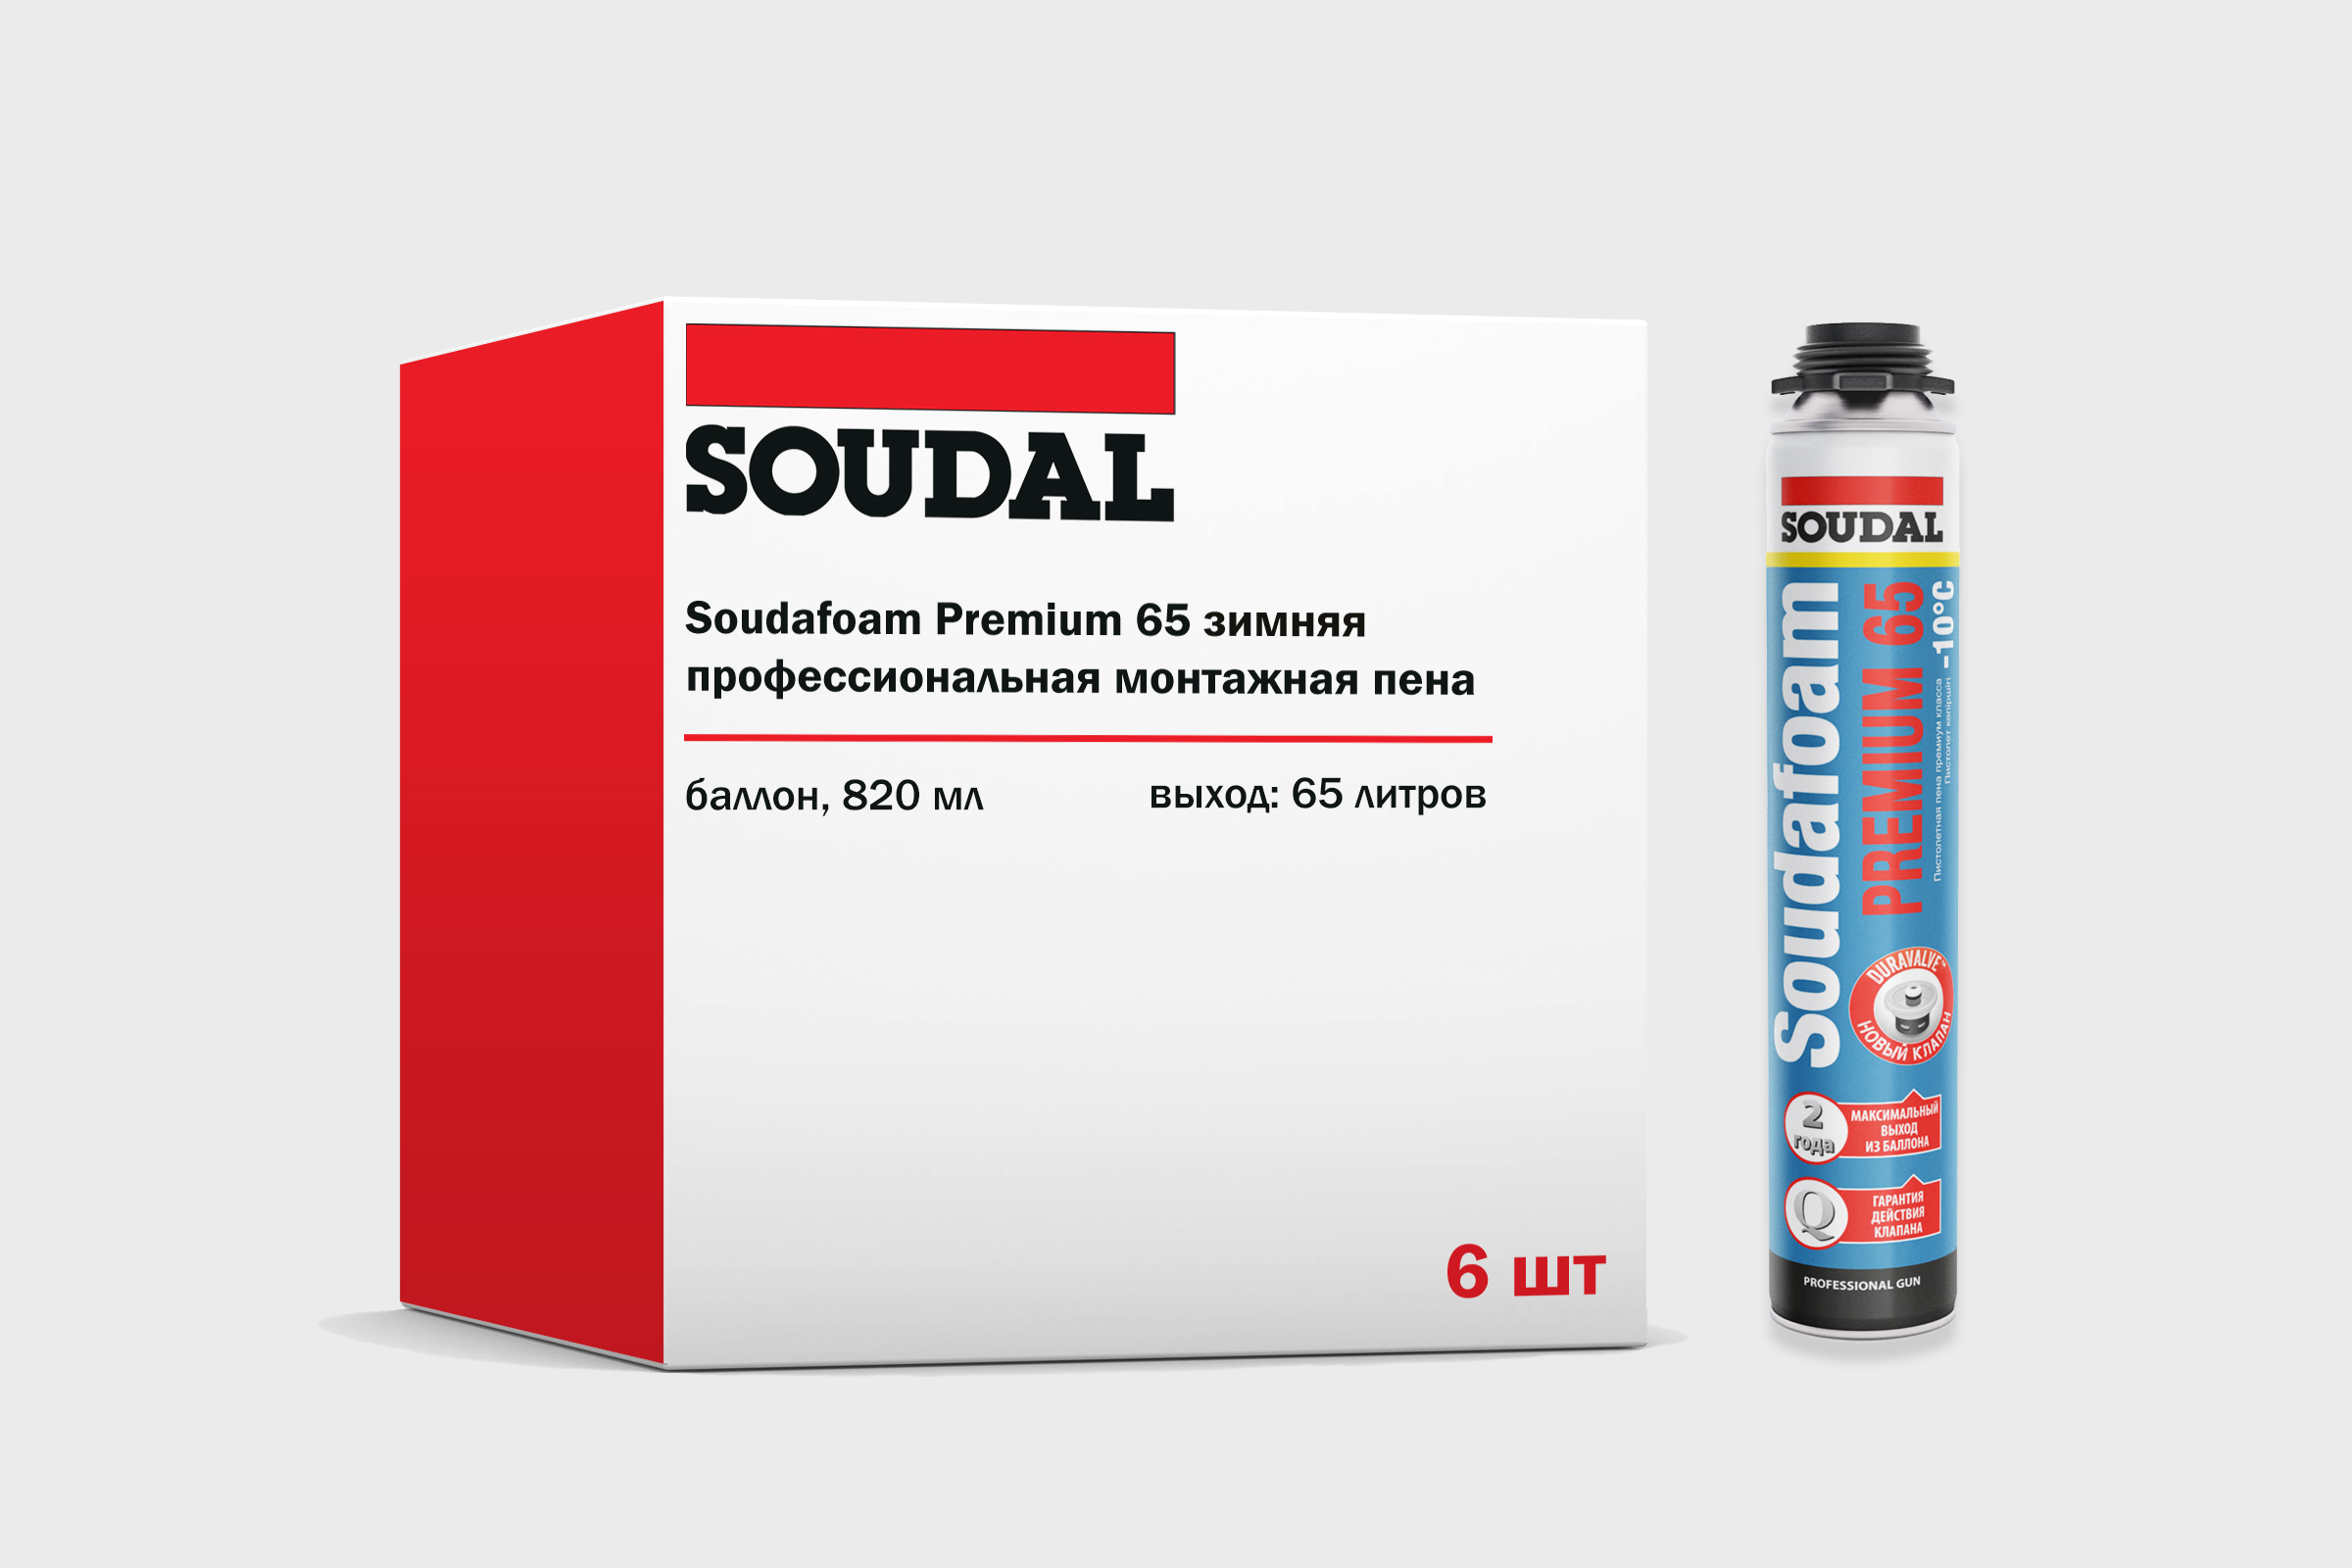 Зимняя монтажная пена Soudal Soudafoam Premium 65 профессиональная 820мл, набор 6 штук